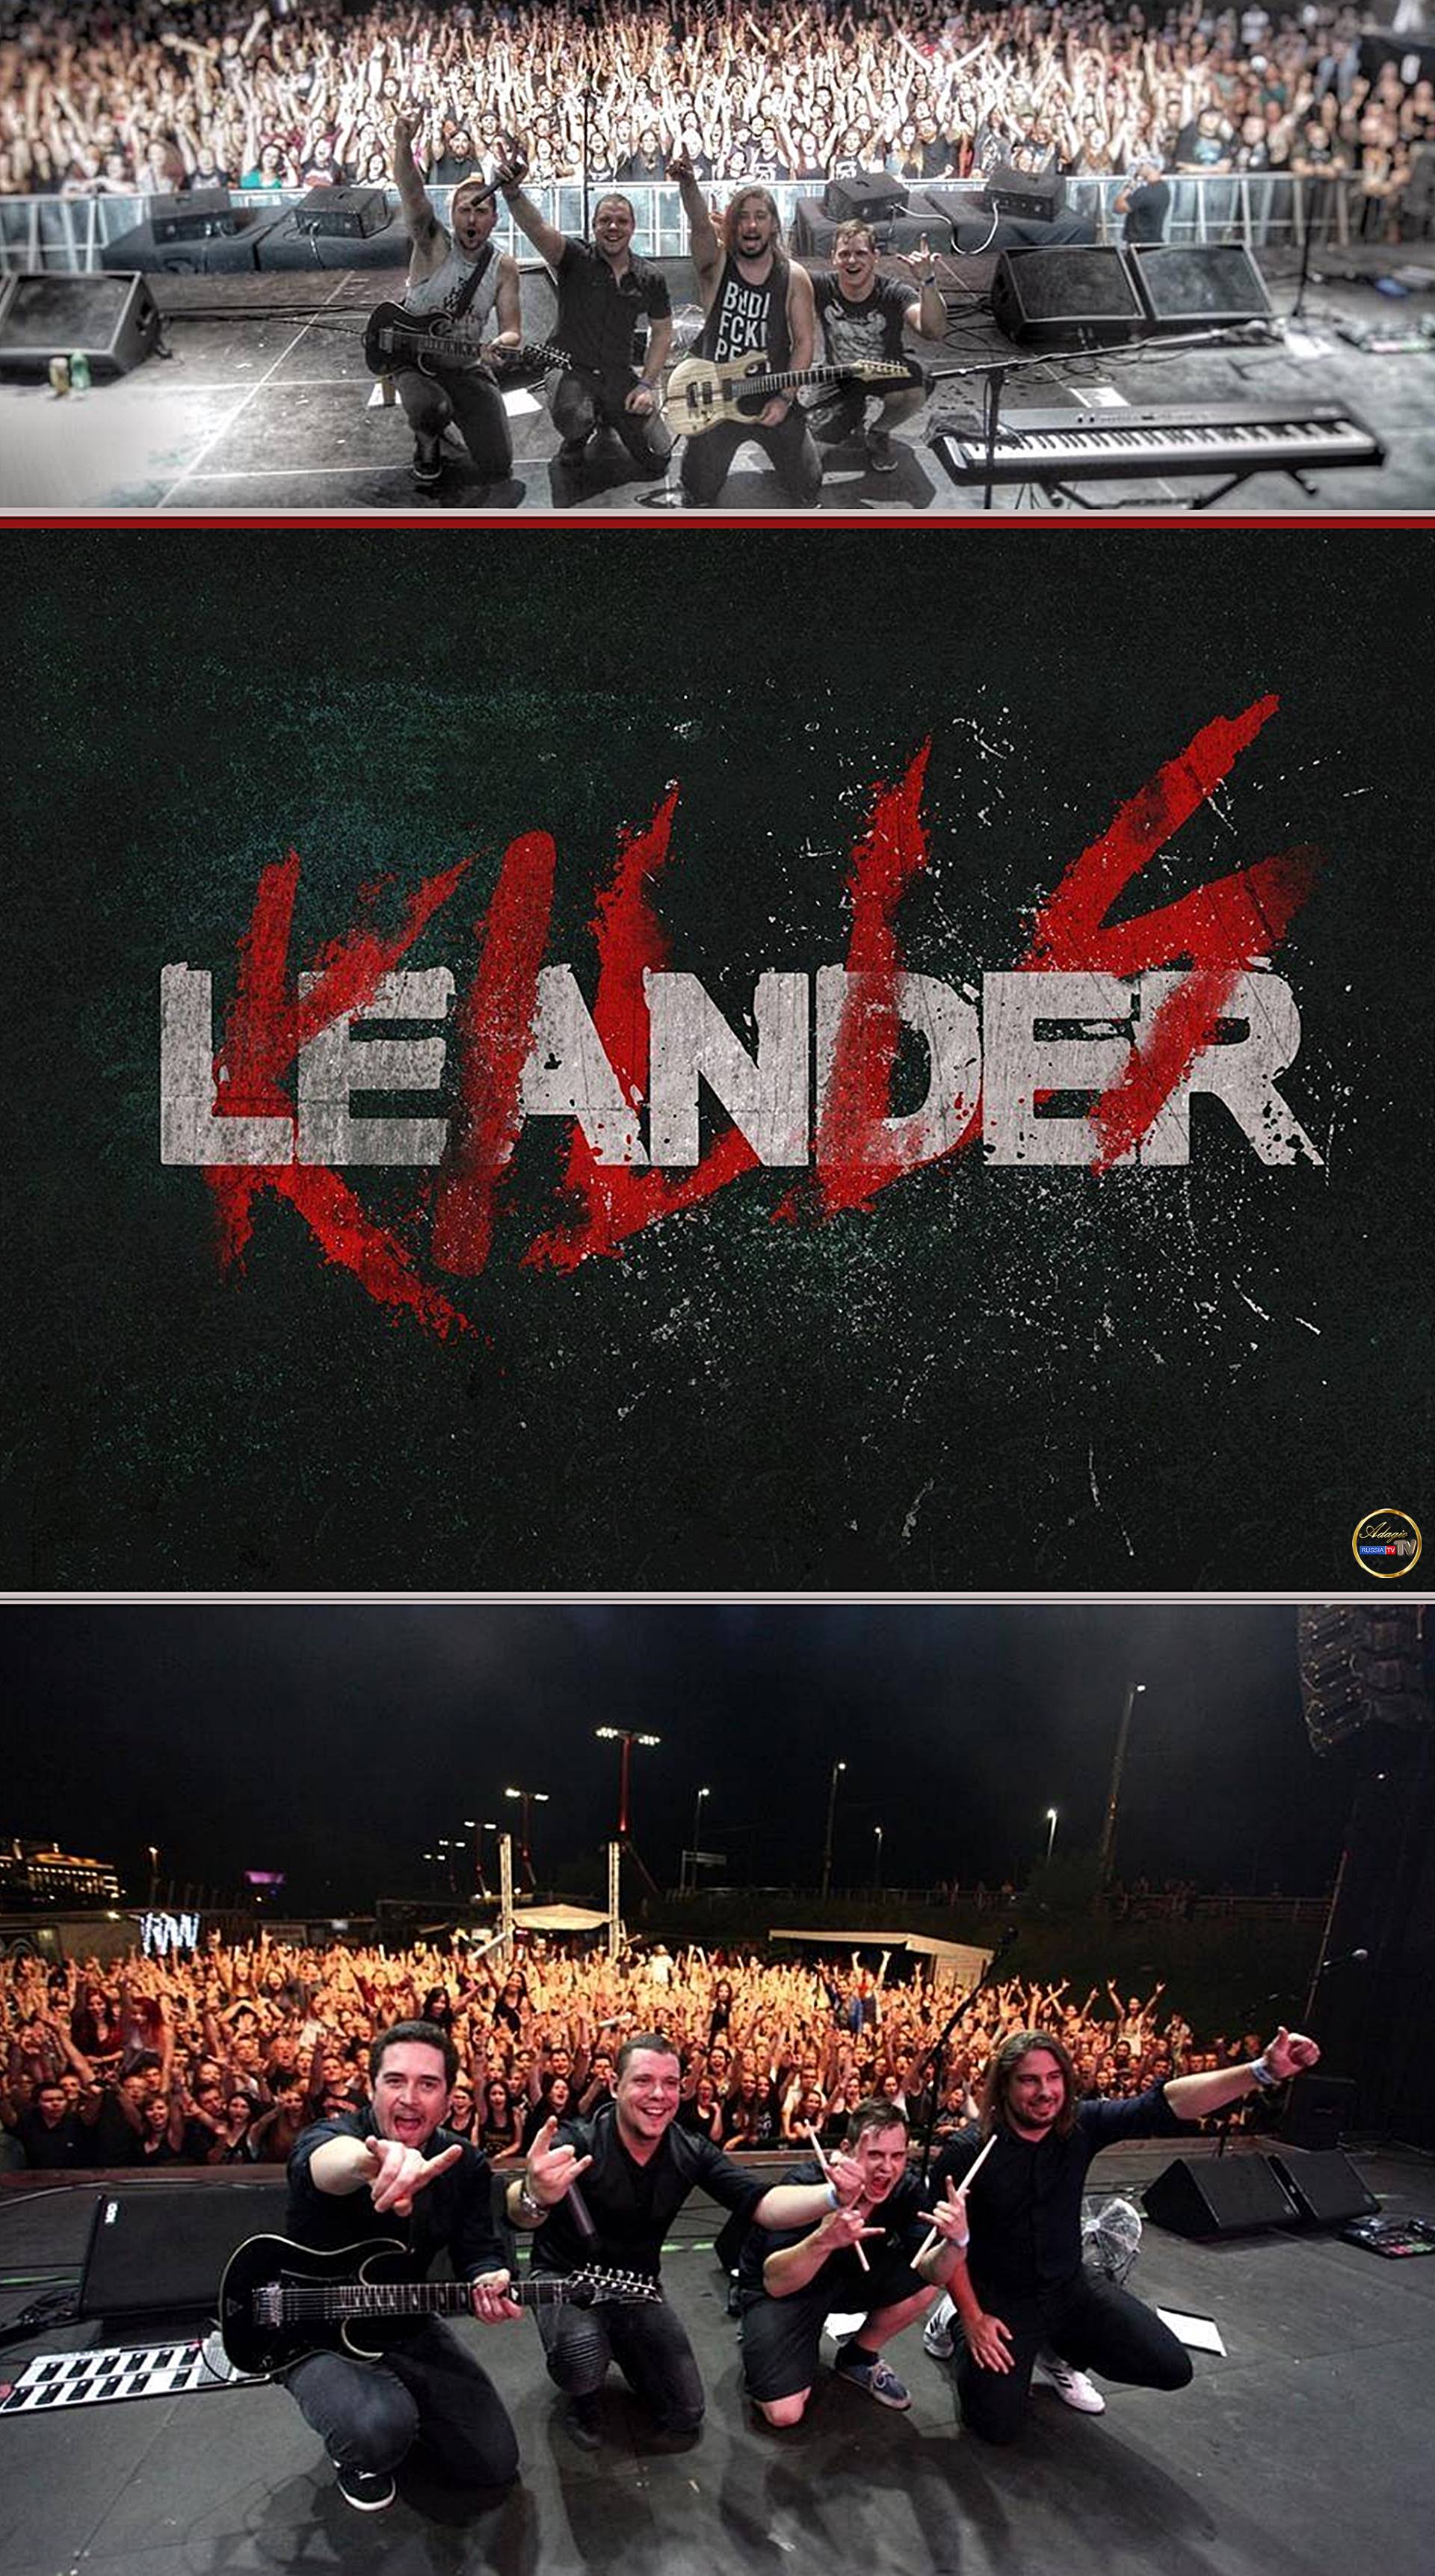 Leander Kills